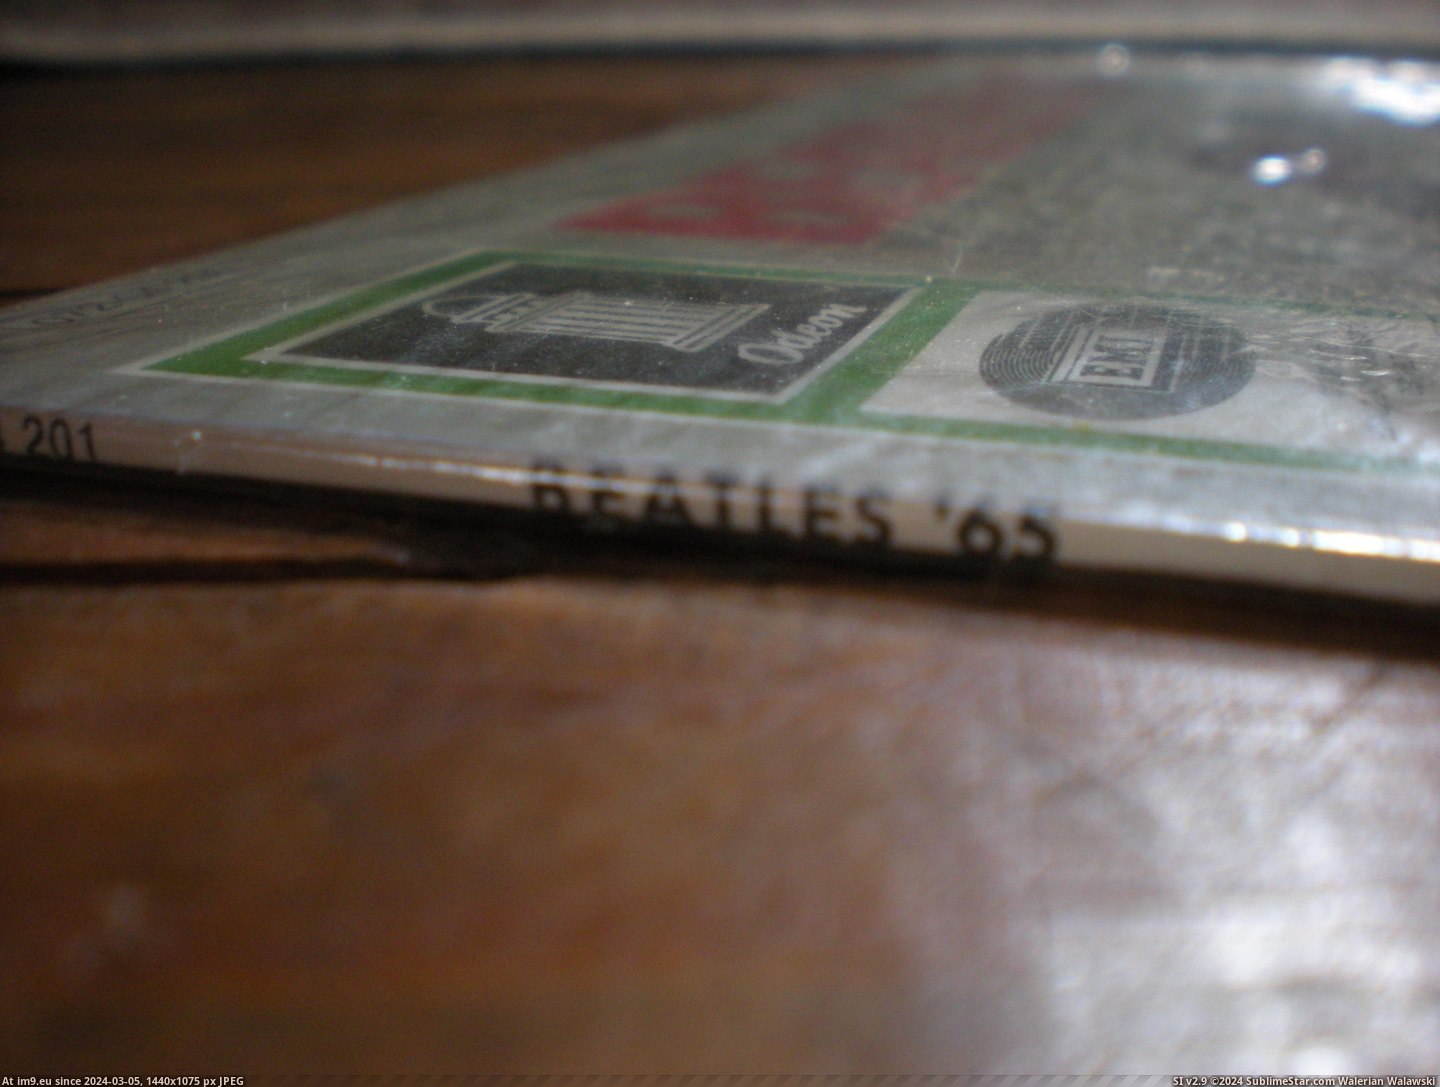  #Beatles  Beatles 65 8 Pic. (Bild von album new 1))